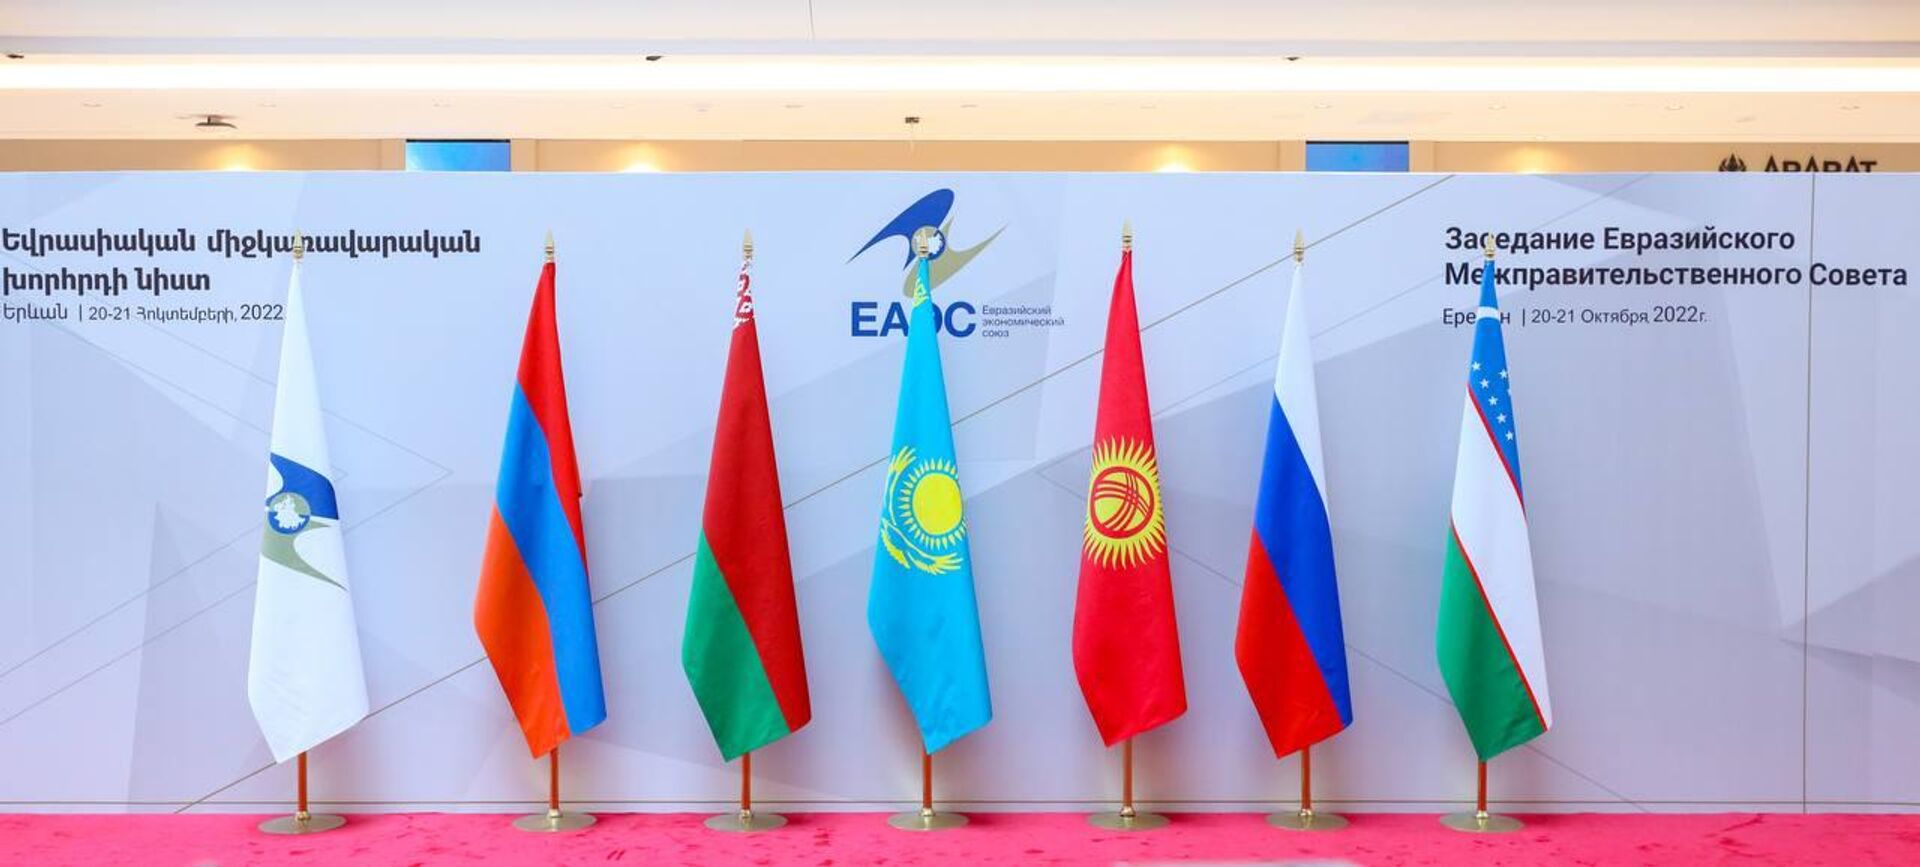 Заседание Евразийского межправительственного совета в расширенном составе в Ереване, 21 октября 2022 г. - Sputnik Казахстан, 1920, 21.10.2022